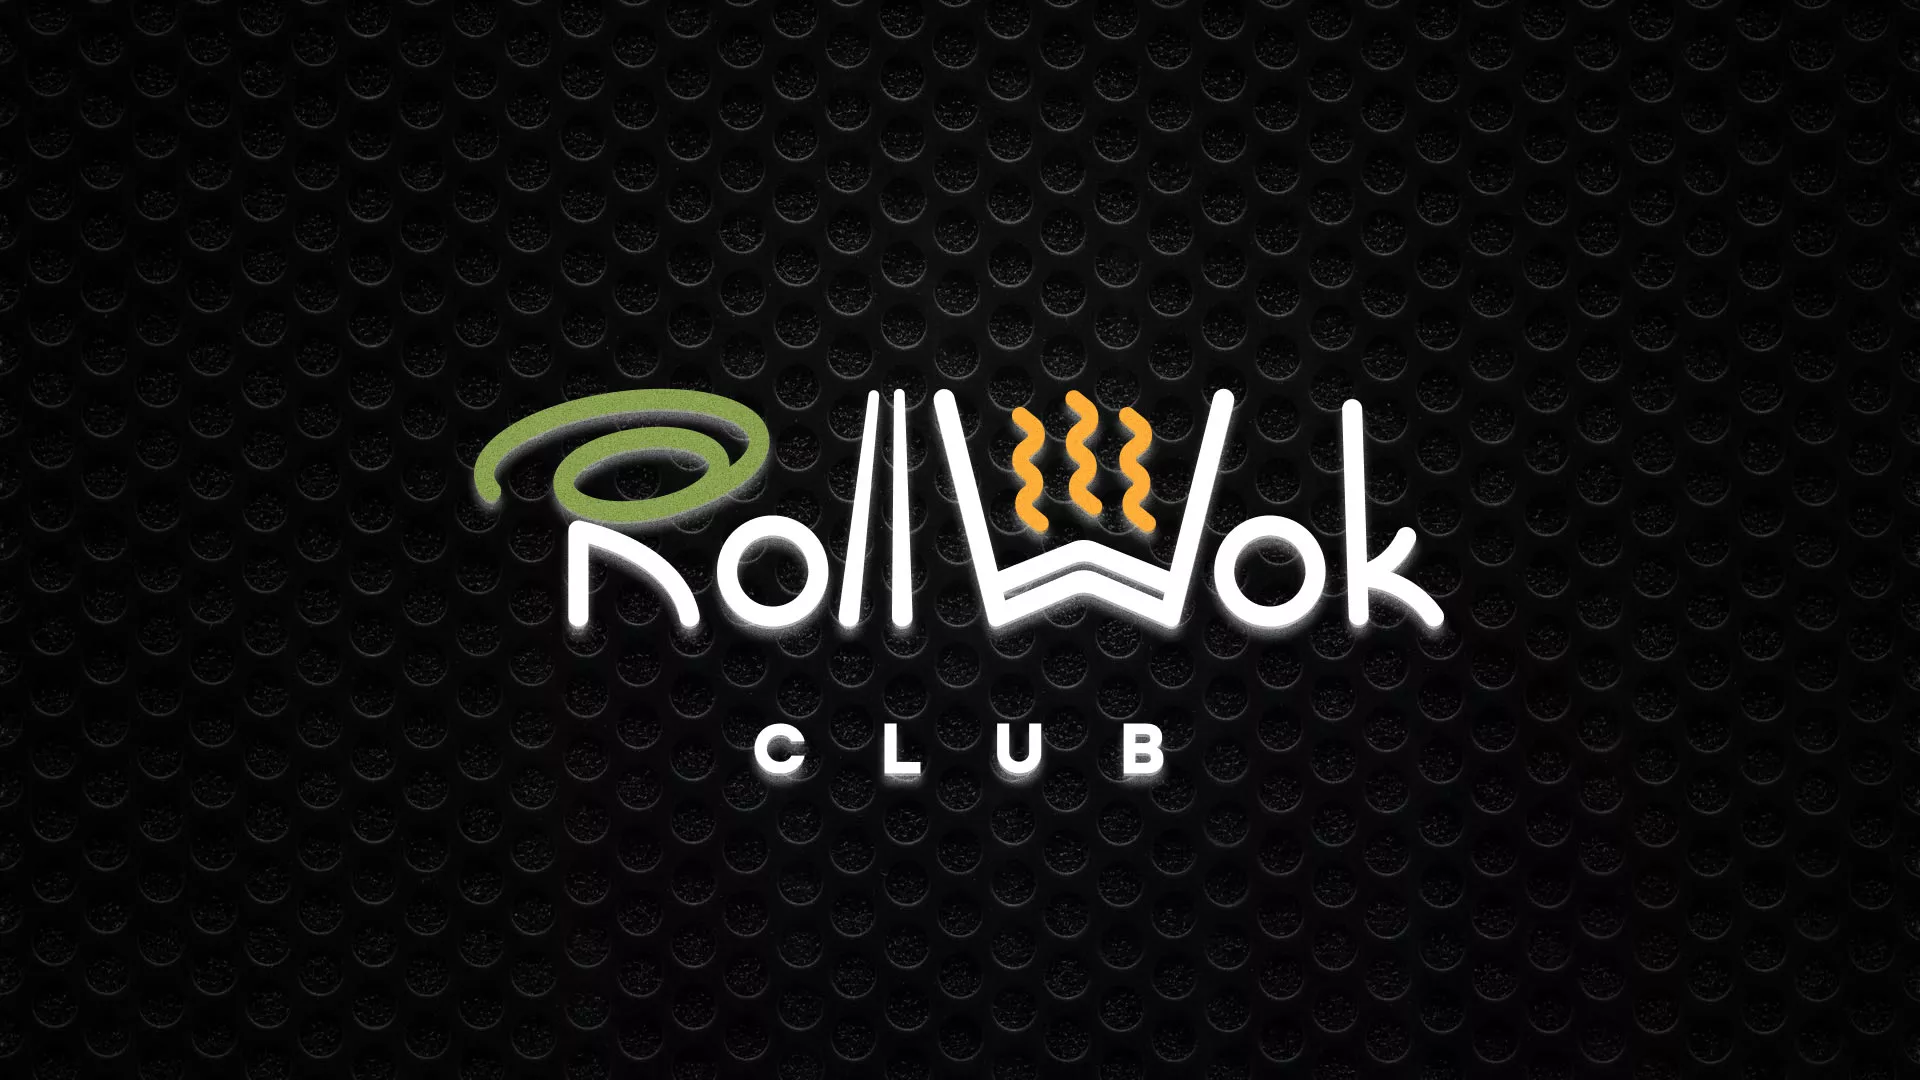 Брендирование торговых точек суши-бара «Roll Wok Club» в Павлово